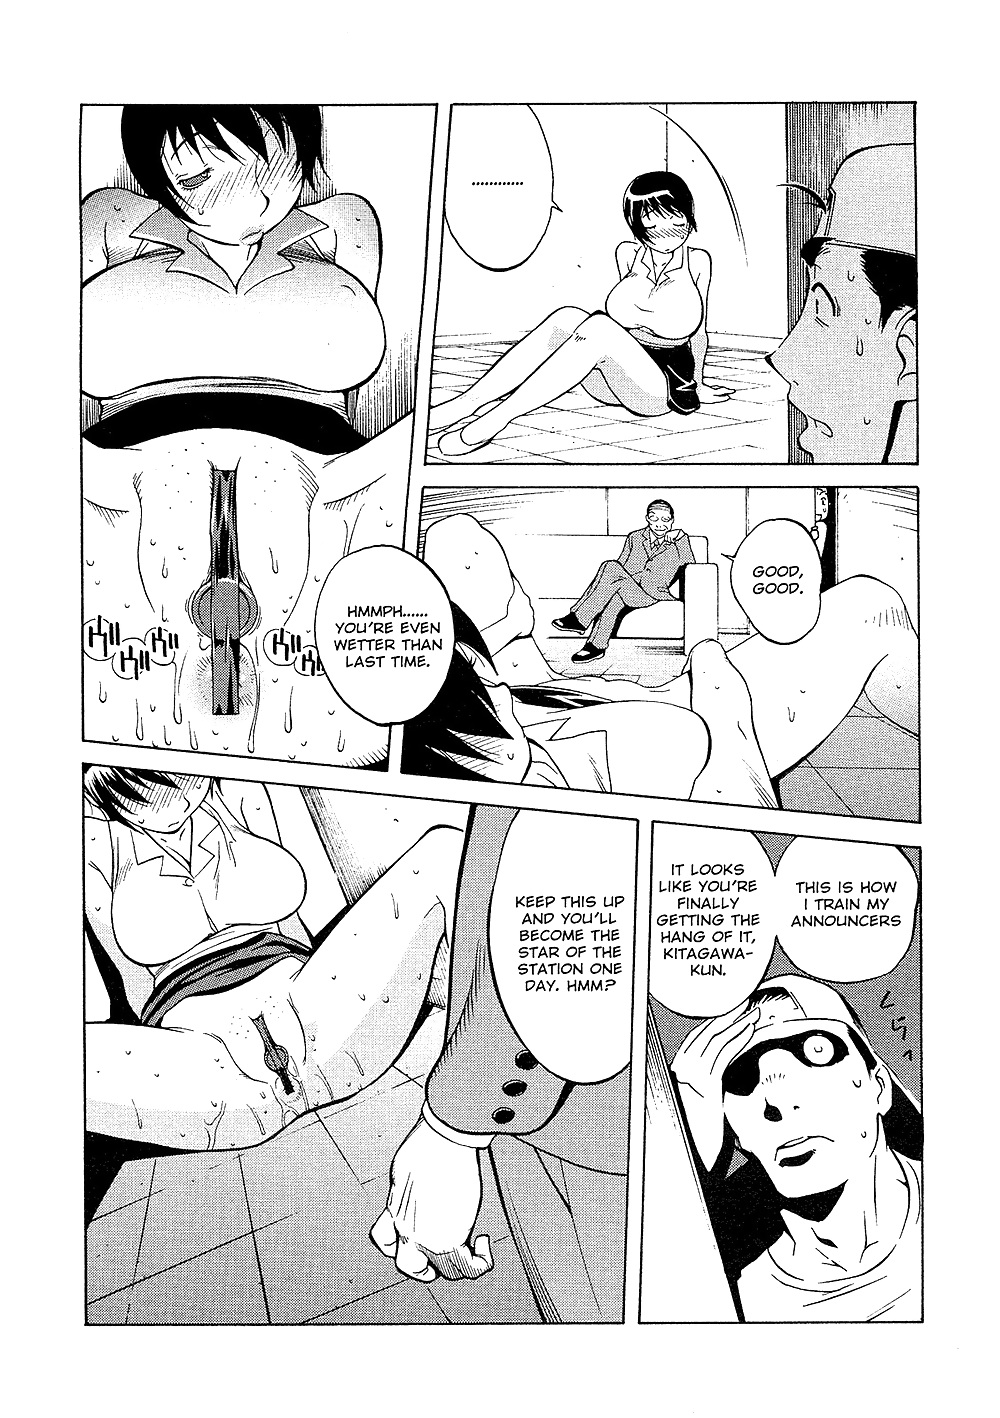 (comic hentai) yumisuke kotoyoshi erotic works #2
 #21623681